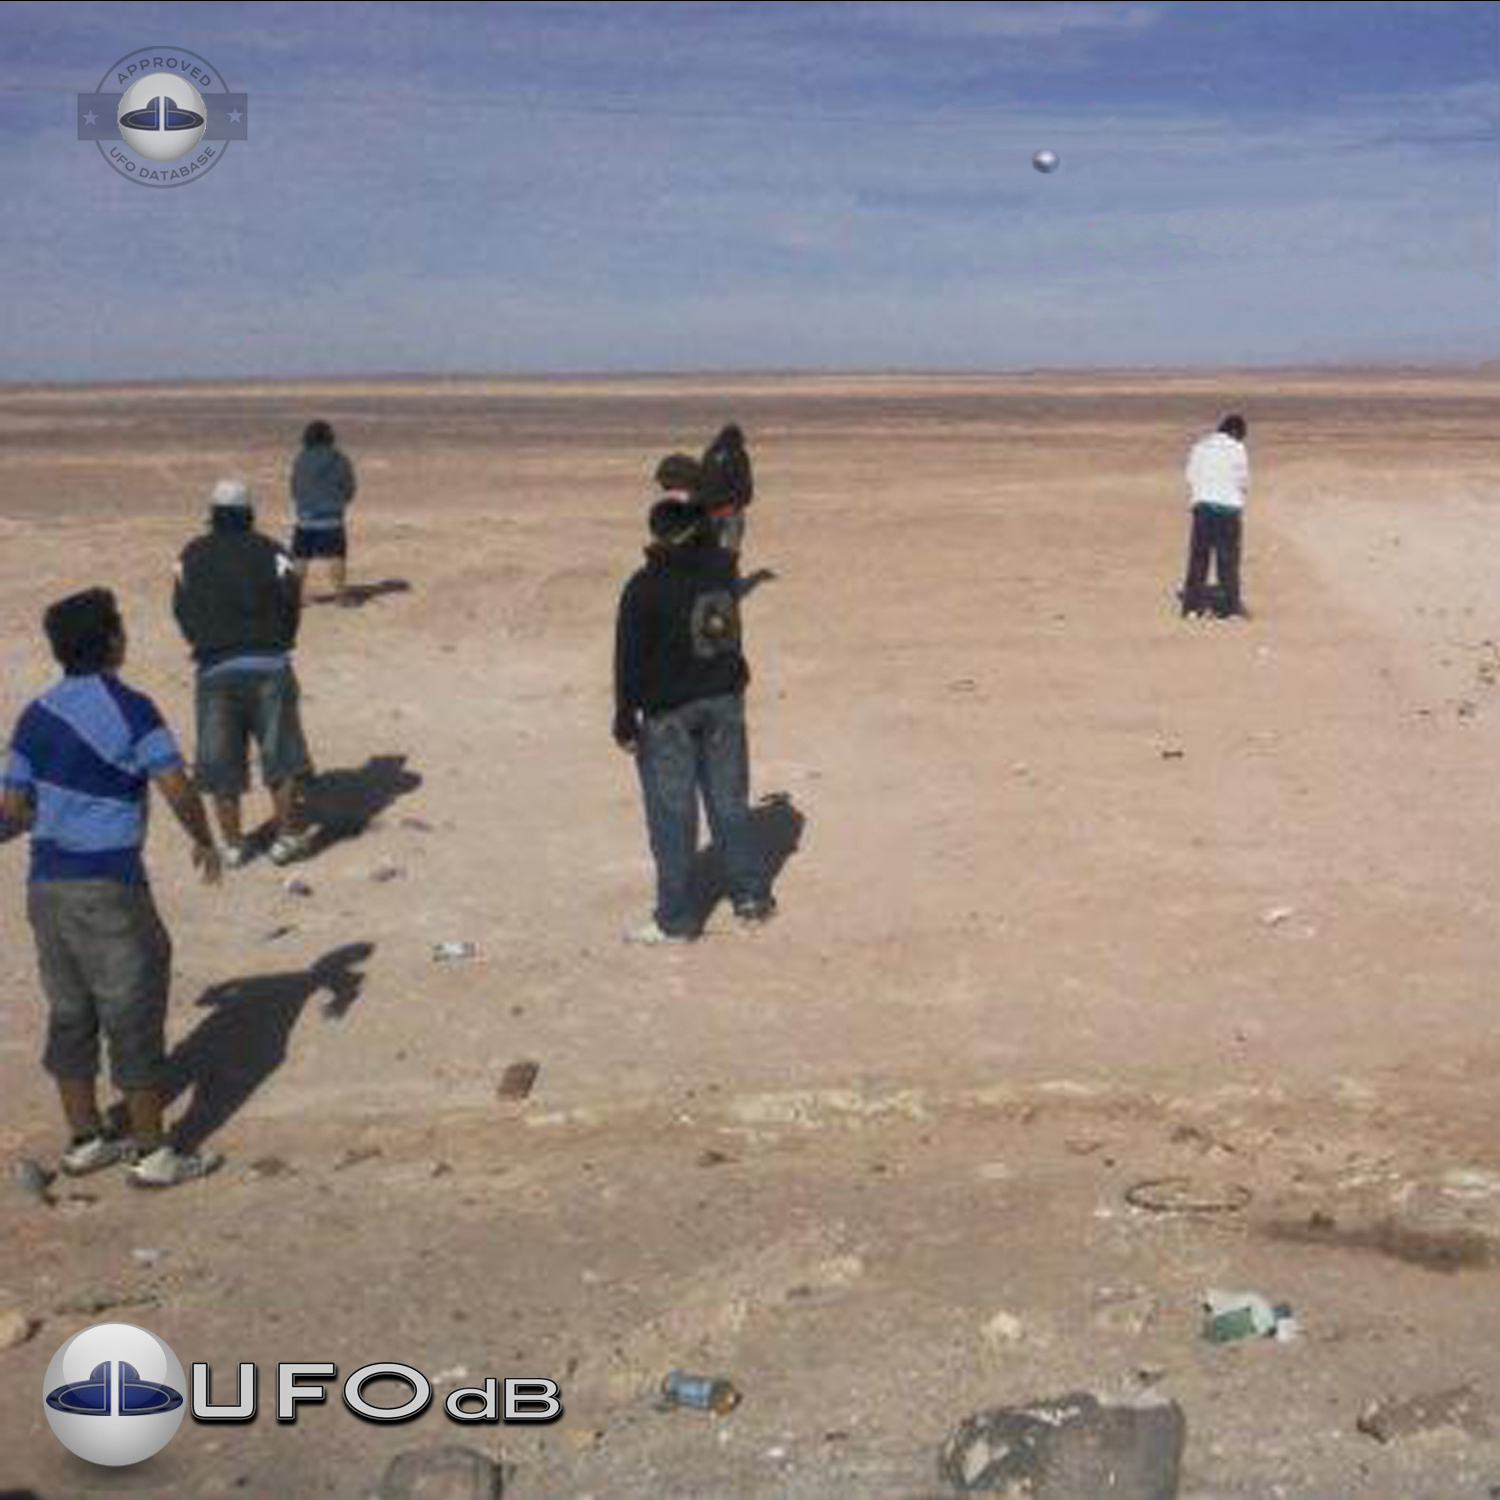 Silver metallic UFO probe in the desert of Chile | Iquique April 2010 UFO Picture #221-1